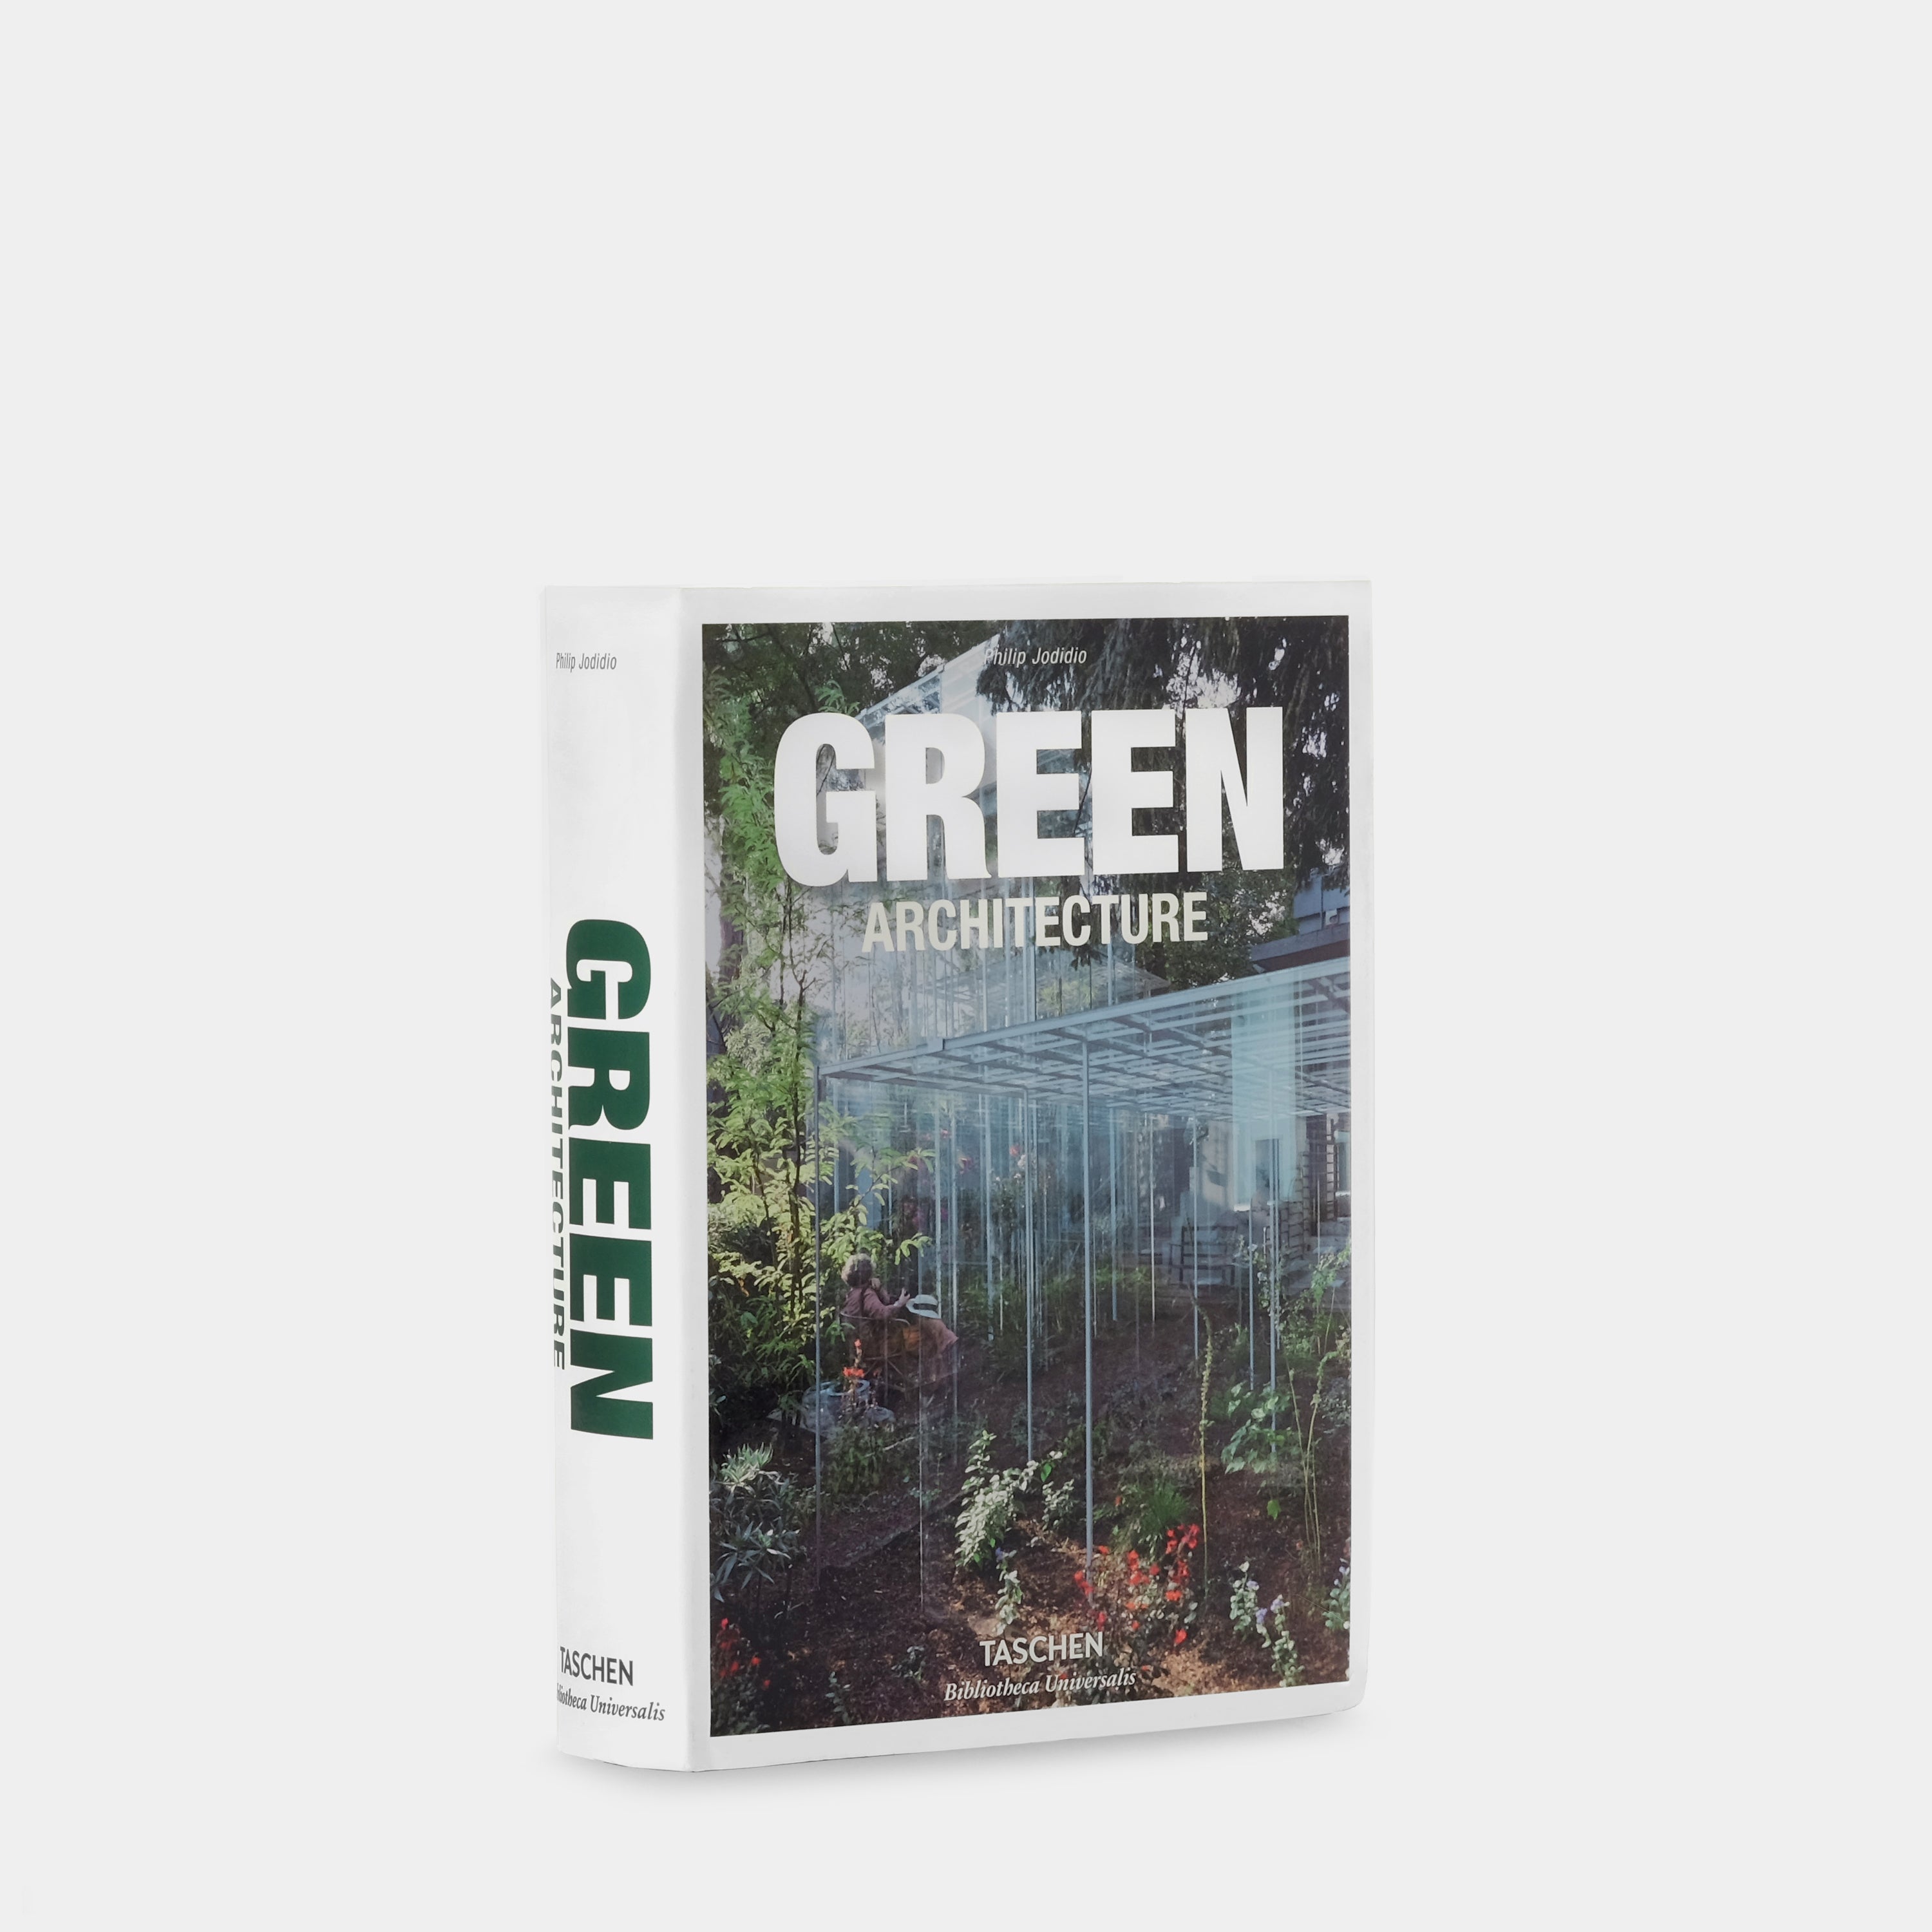 Green Architecture by Philip Jodidio Taschen Book